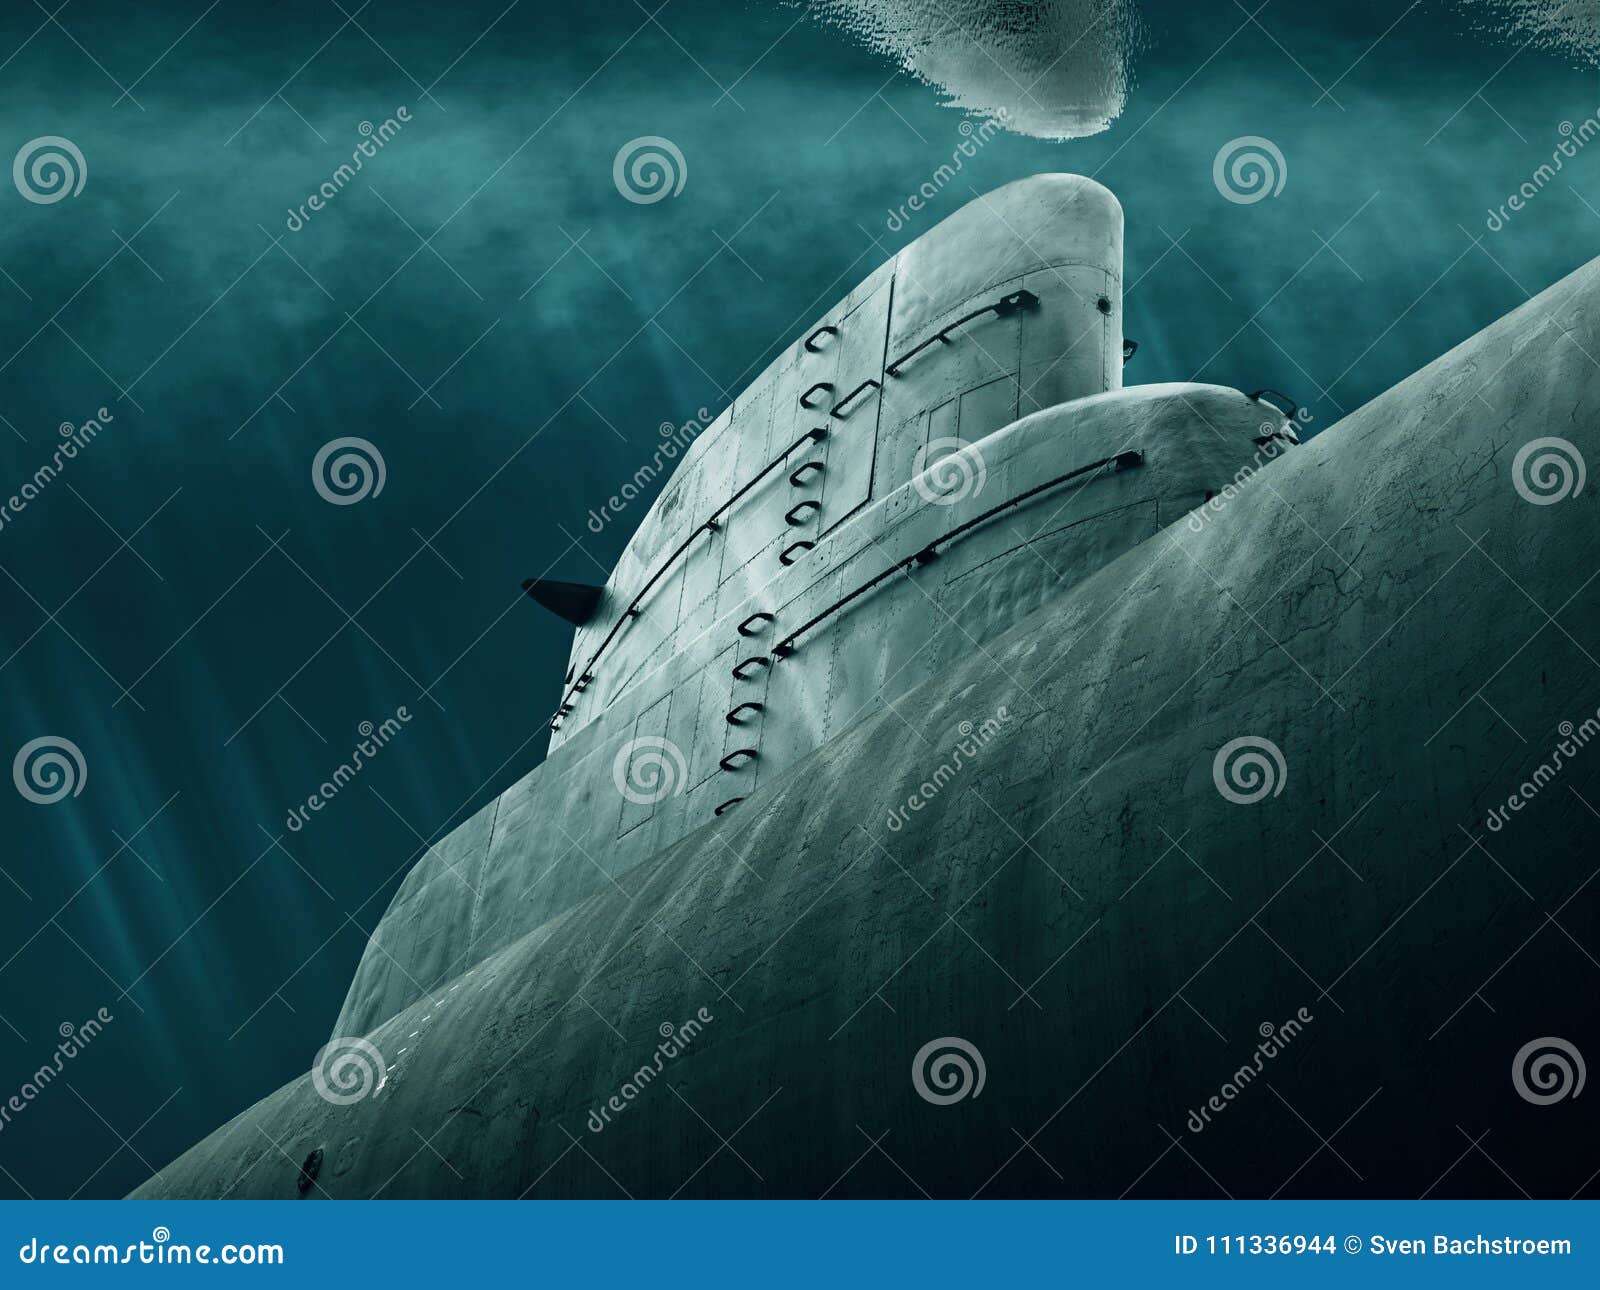 submarine is waiting under water